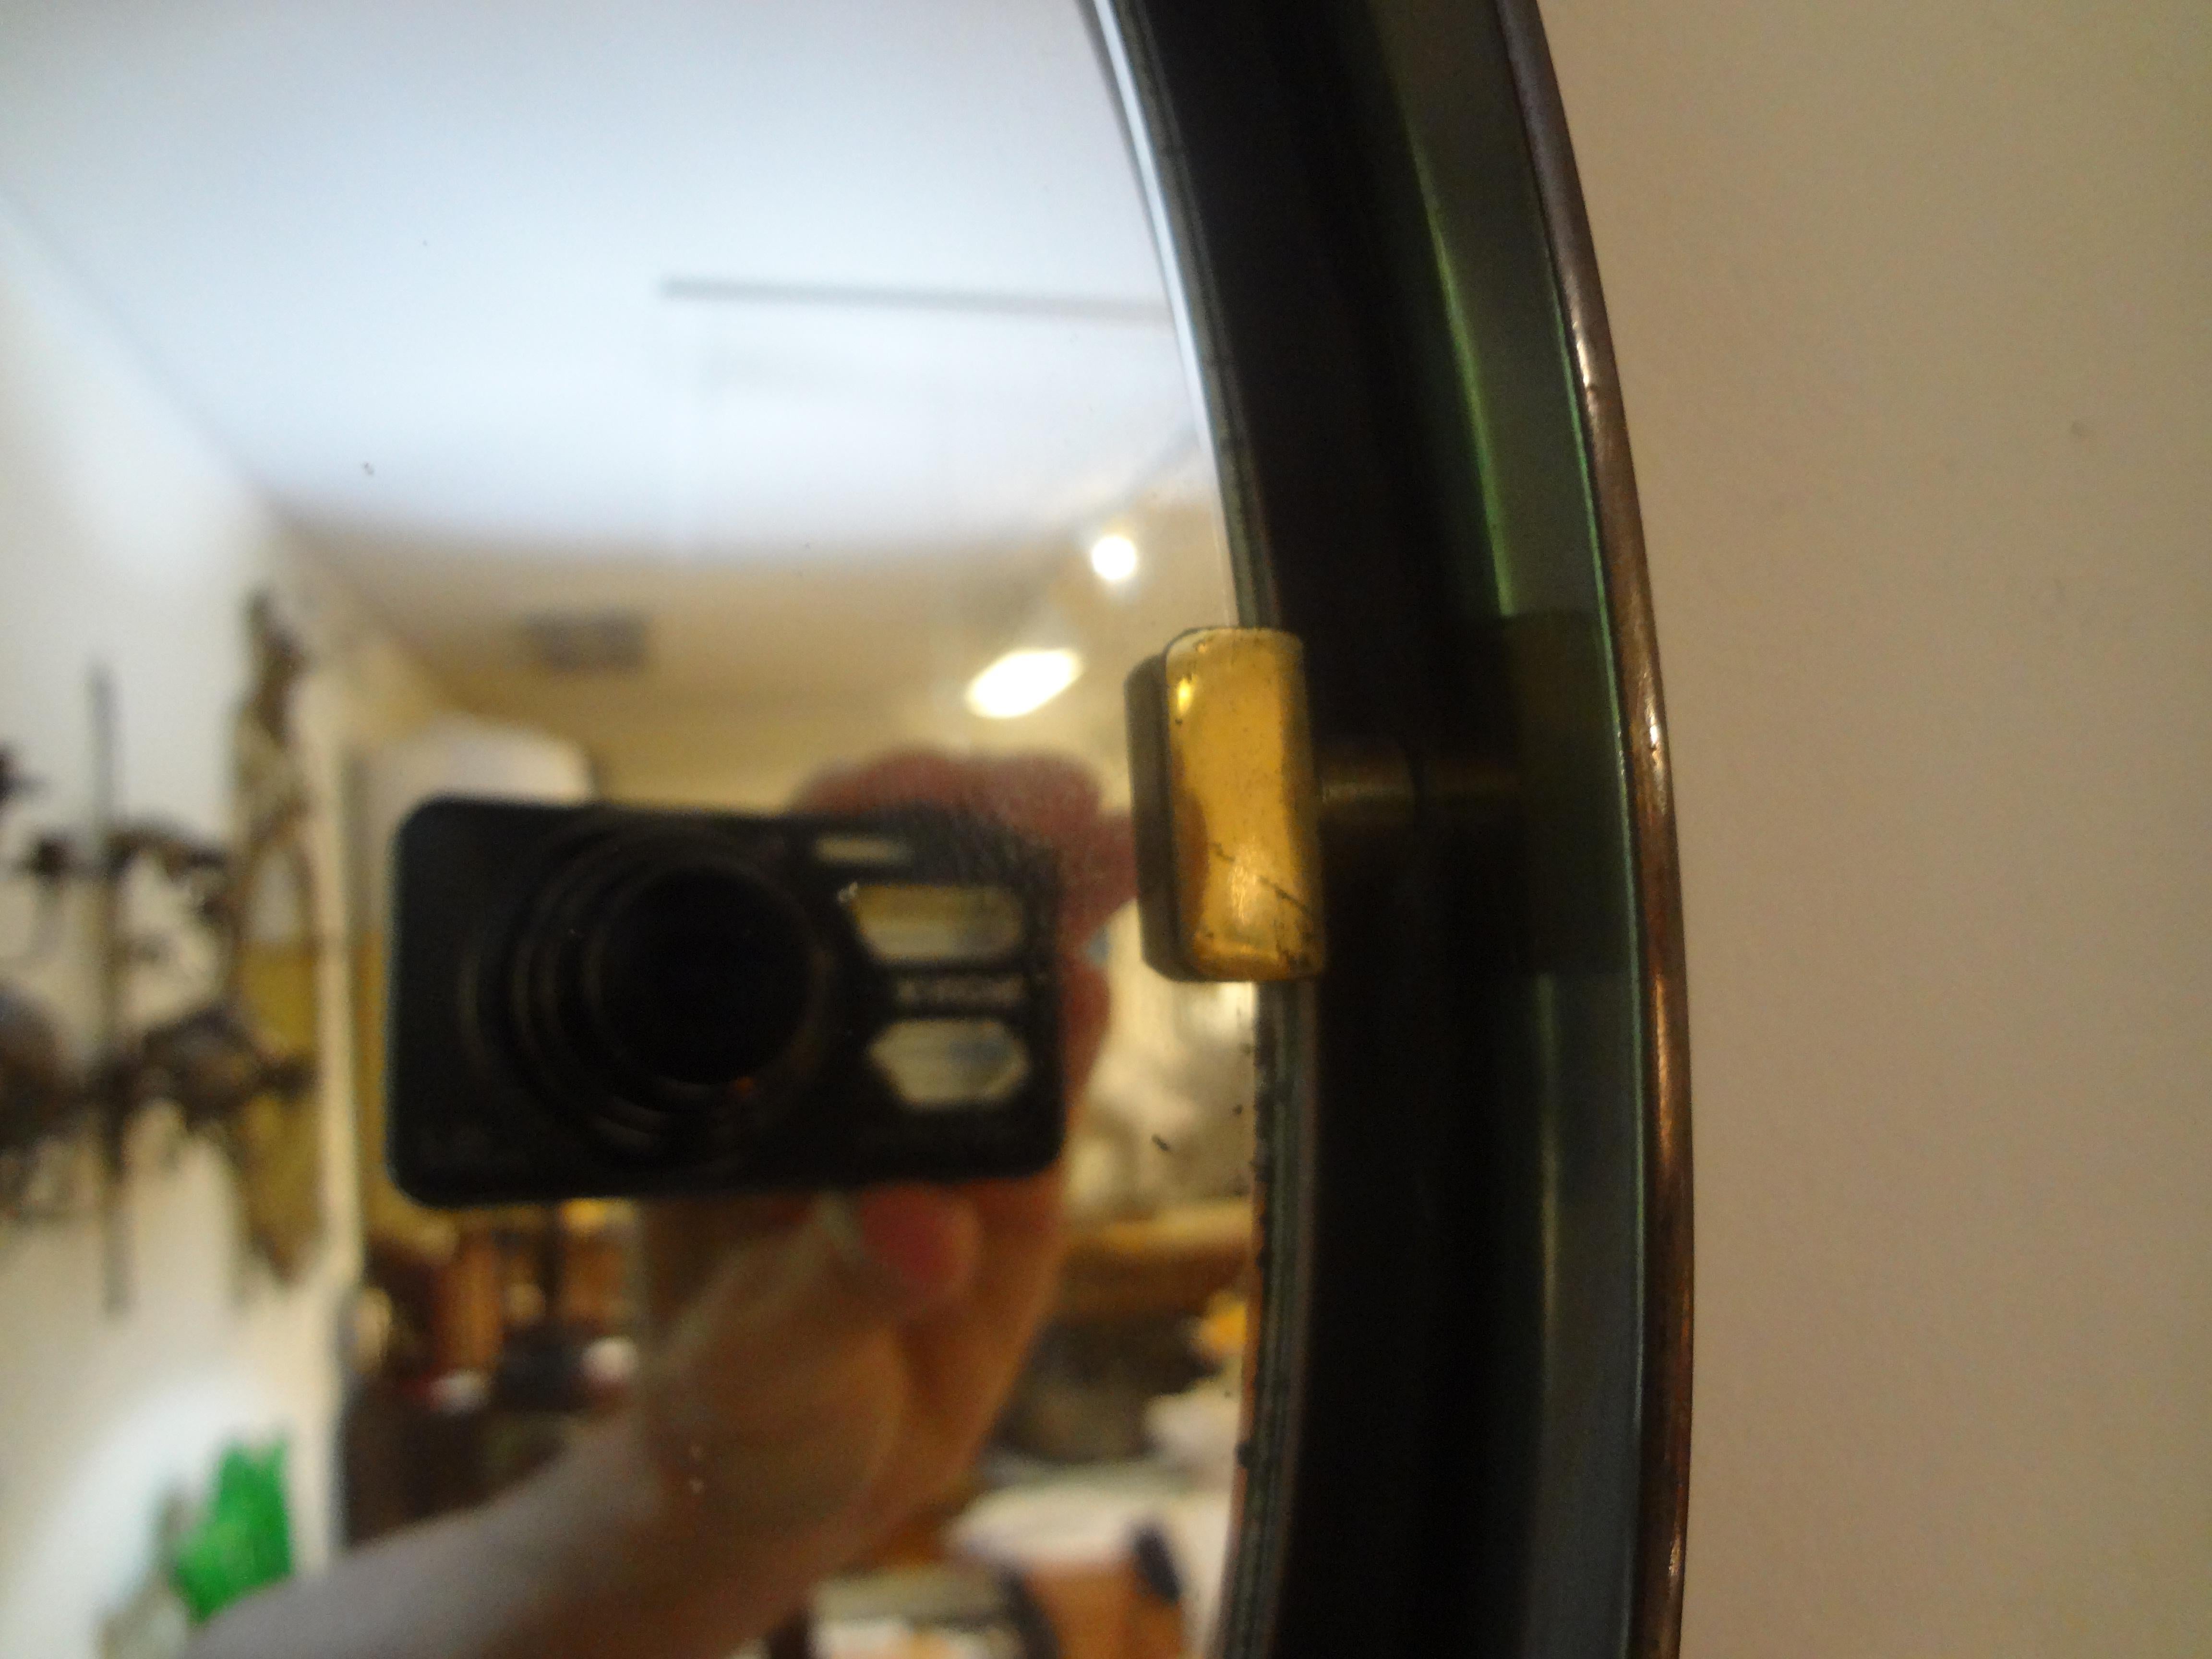 Miroir italien en bronze et laiton. 
Ce miroir rond italien de style moderne du milieu du siècle est doté d'une structure en bronze et de ferrures en laiton qui maintiennent le miroir en place. Le miroir central donne une impression de flottement.
À